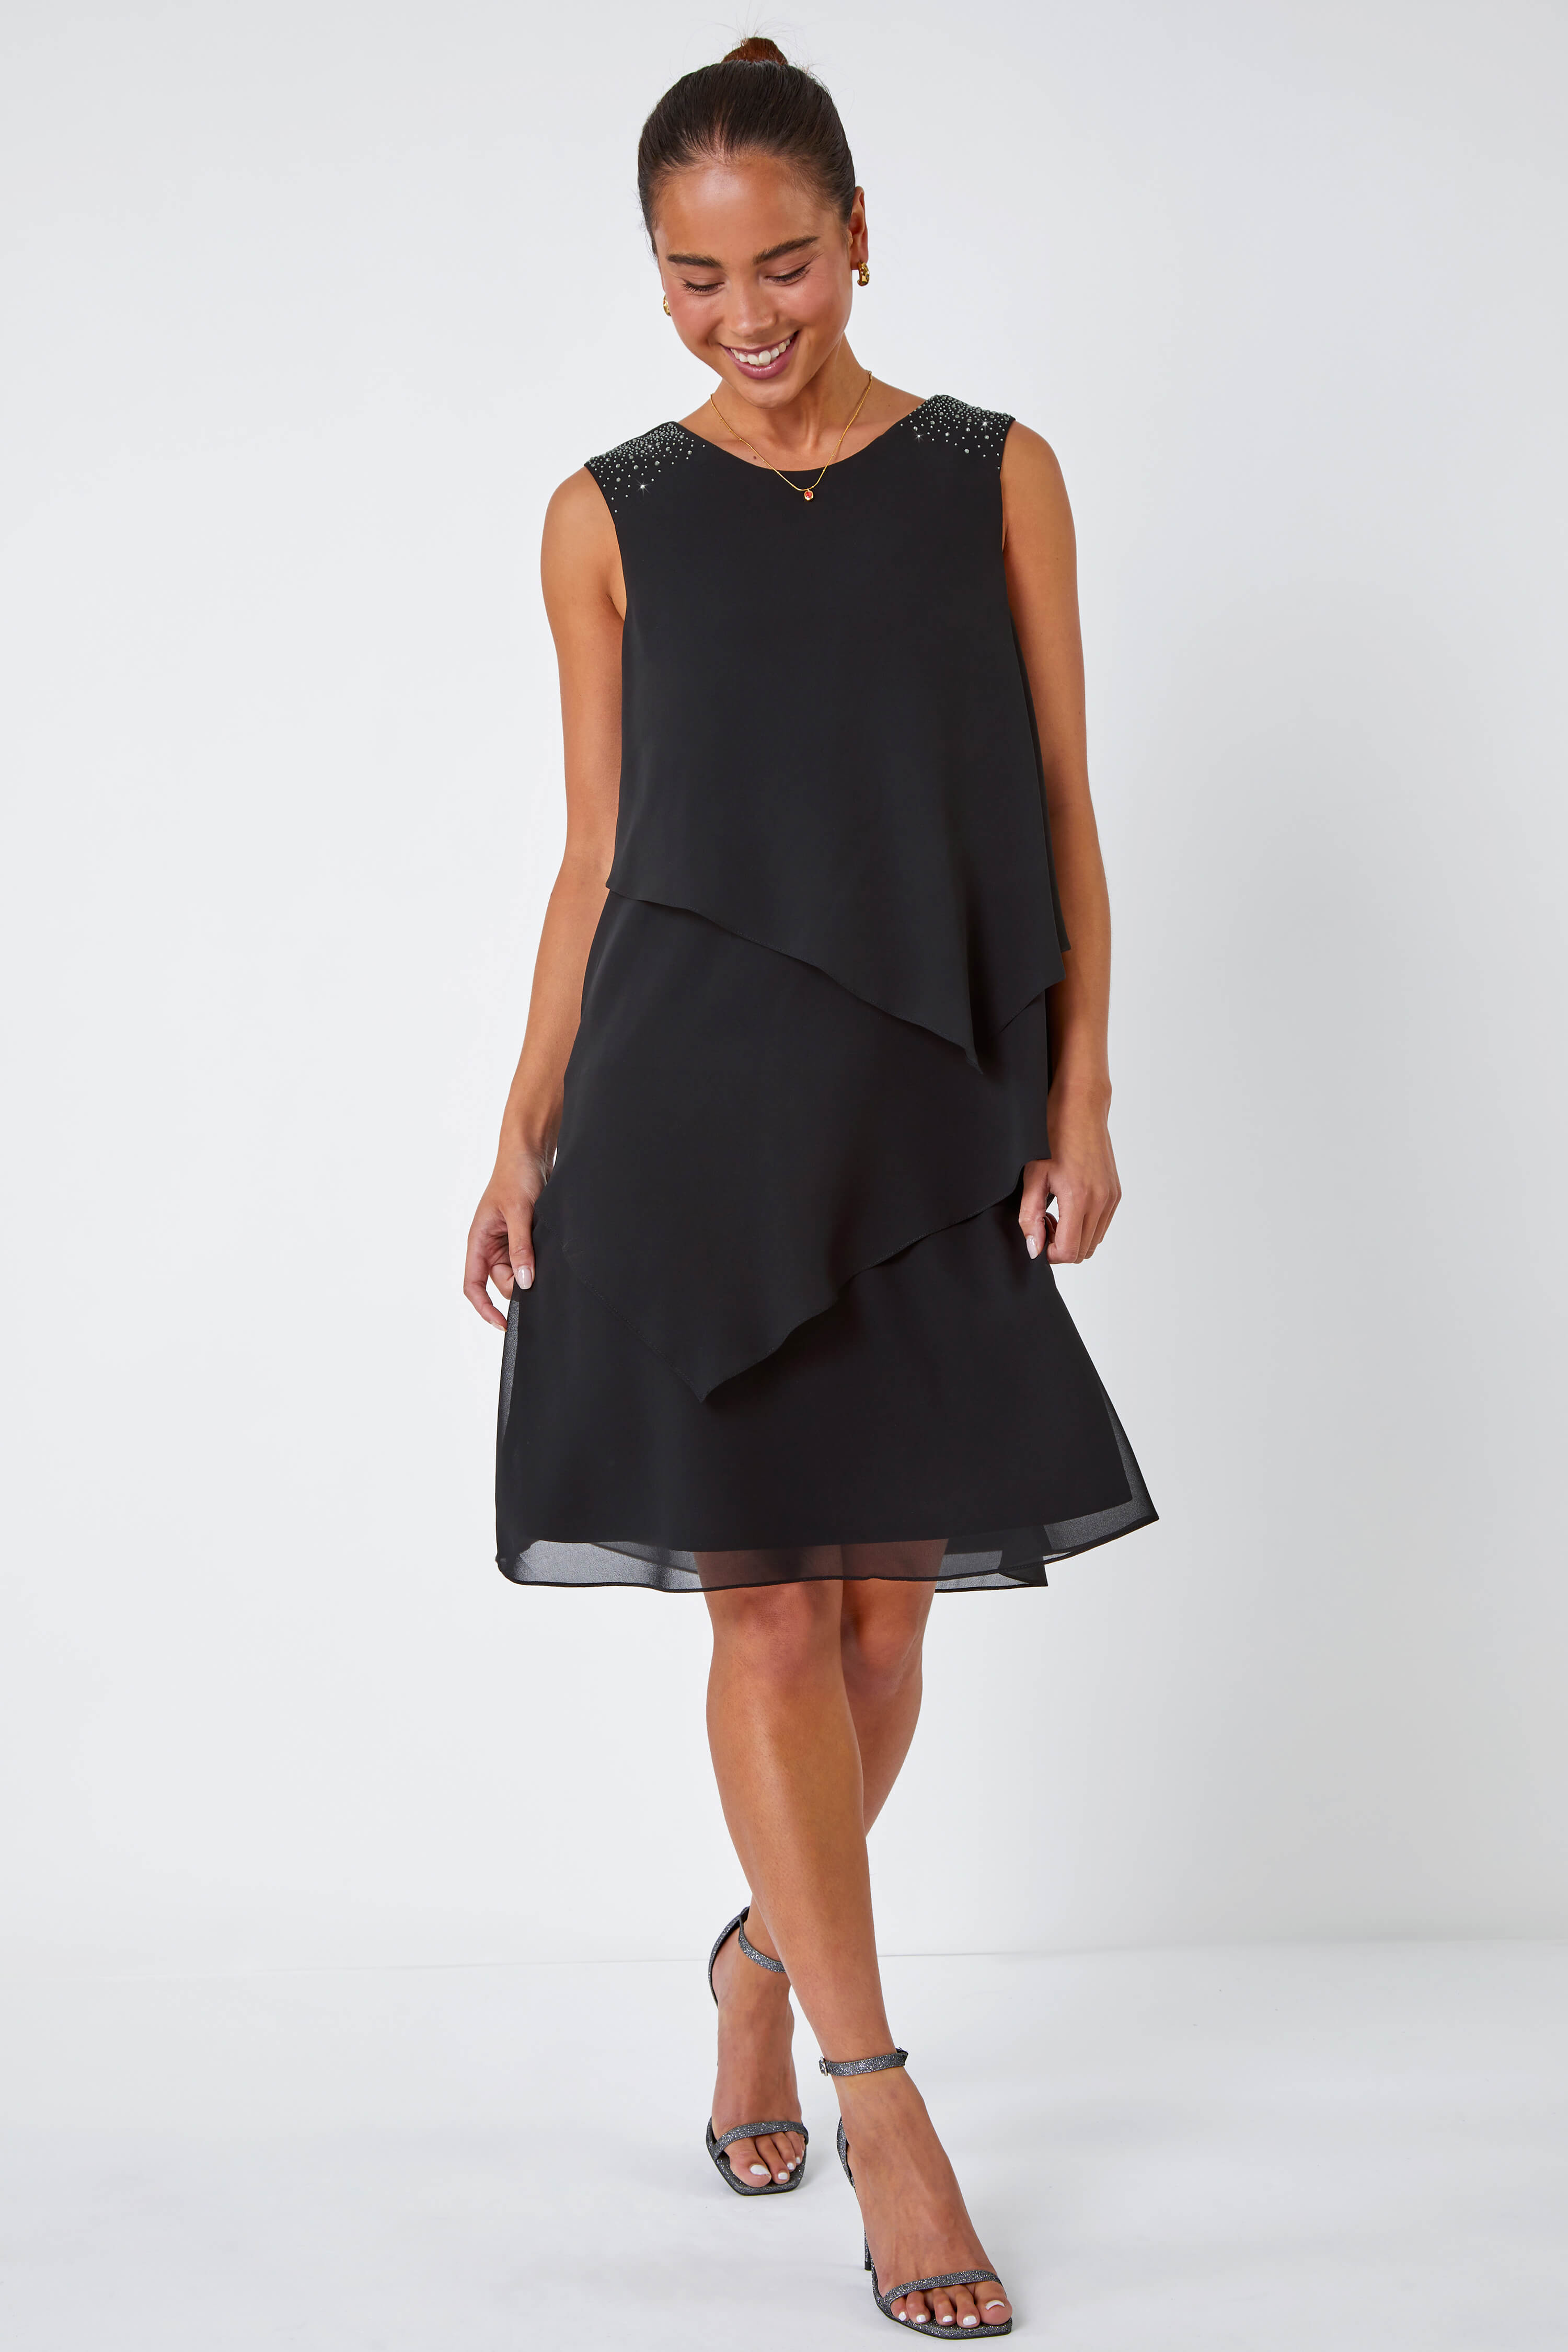 Black Petite Embellished Chiffon Tiered Shift Dress, Image 3 of 5